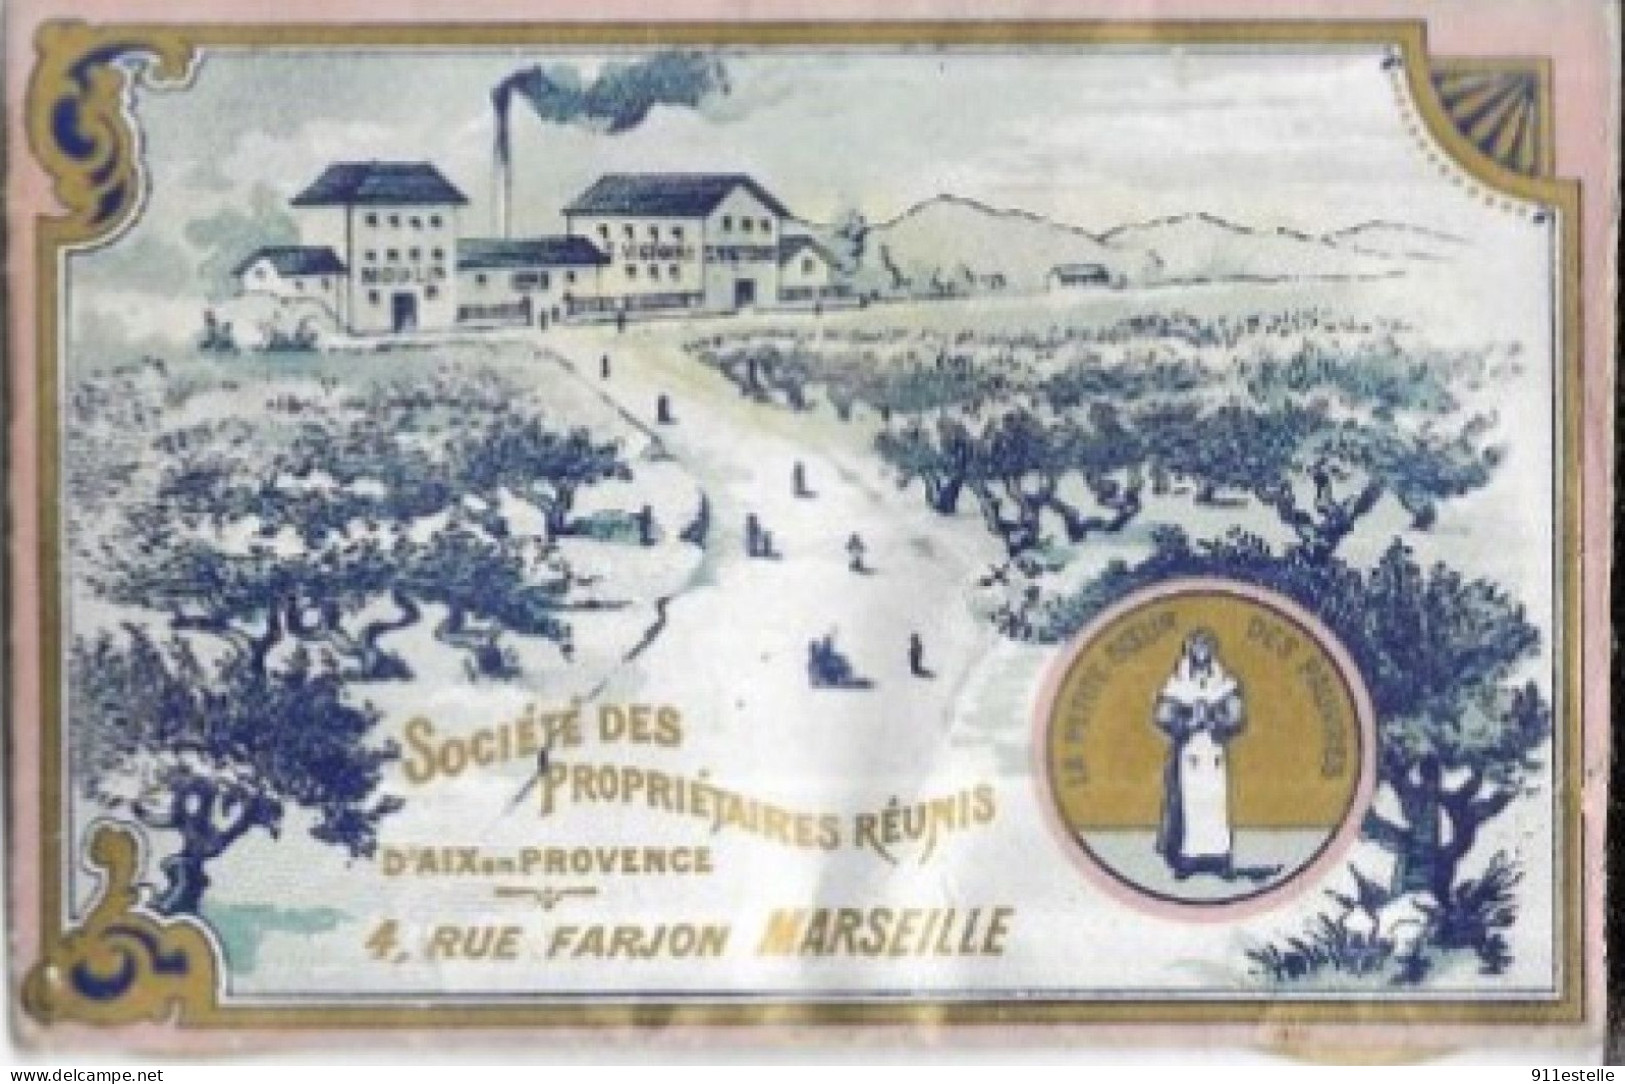 13 MARSEILLE . SOCIETE DES PROPRIETAIRES REUNIS 4. RUE FARJON ( Carte PUB Violette  ) - Station Area, Belle De Mai, Plombières